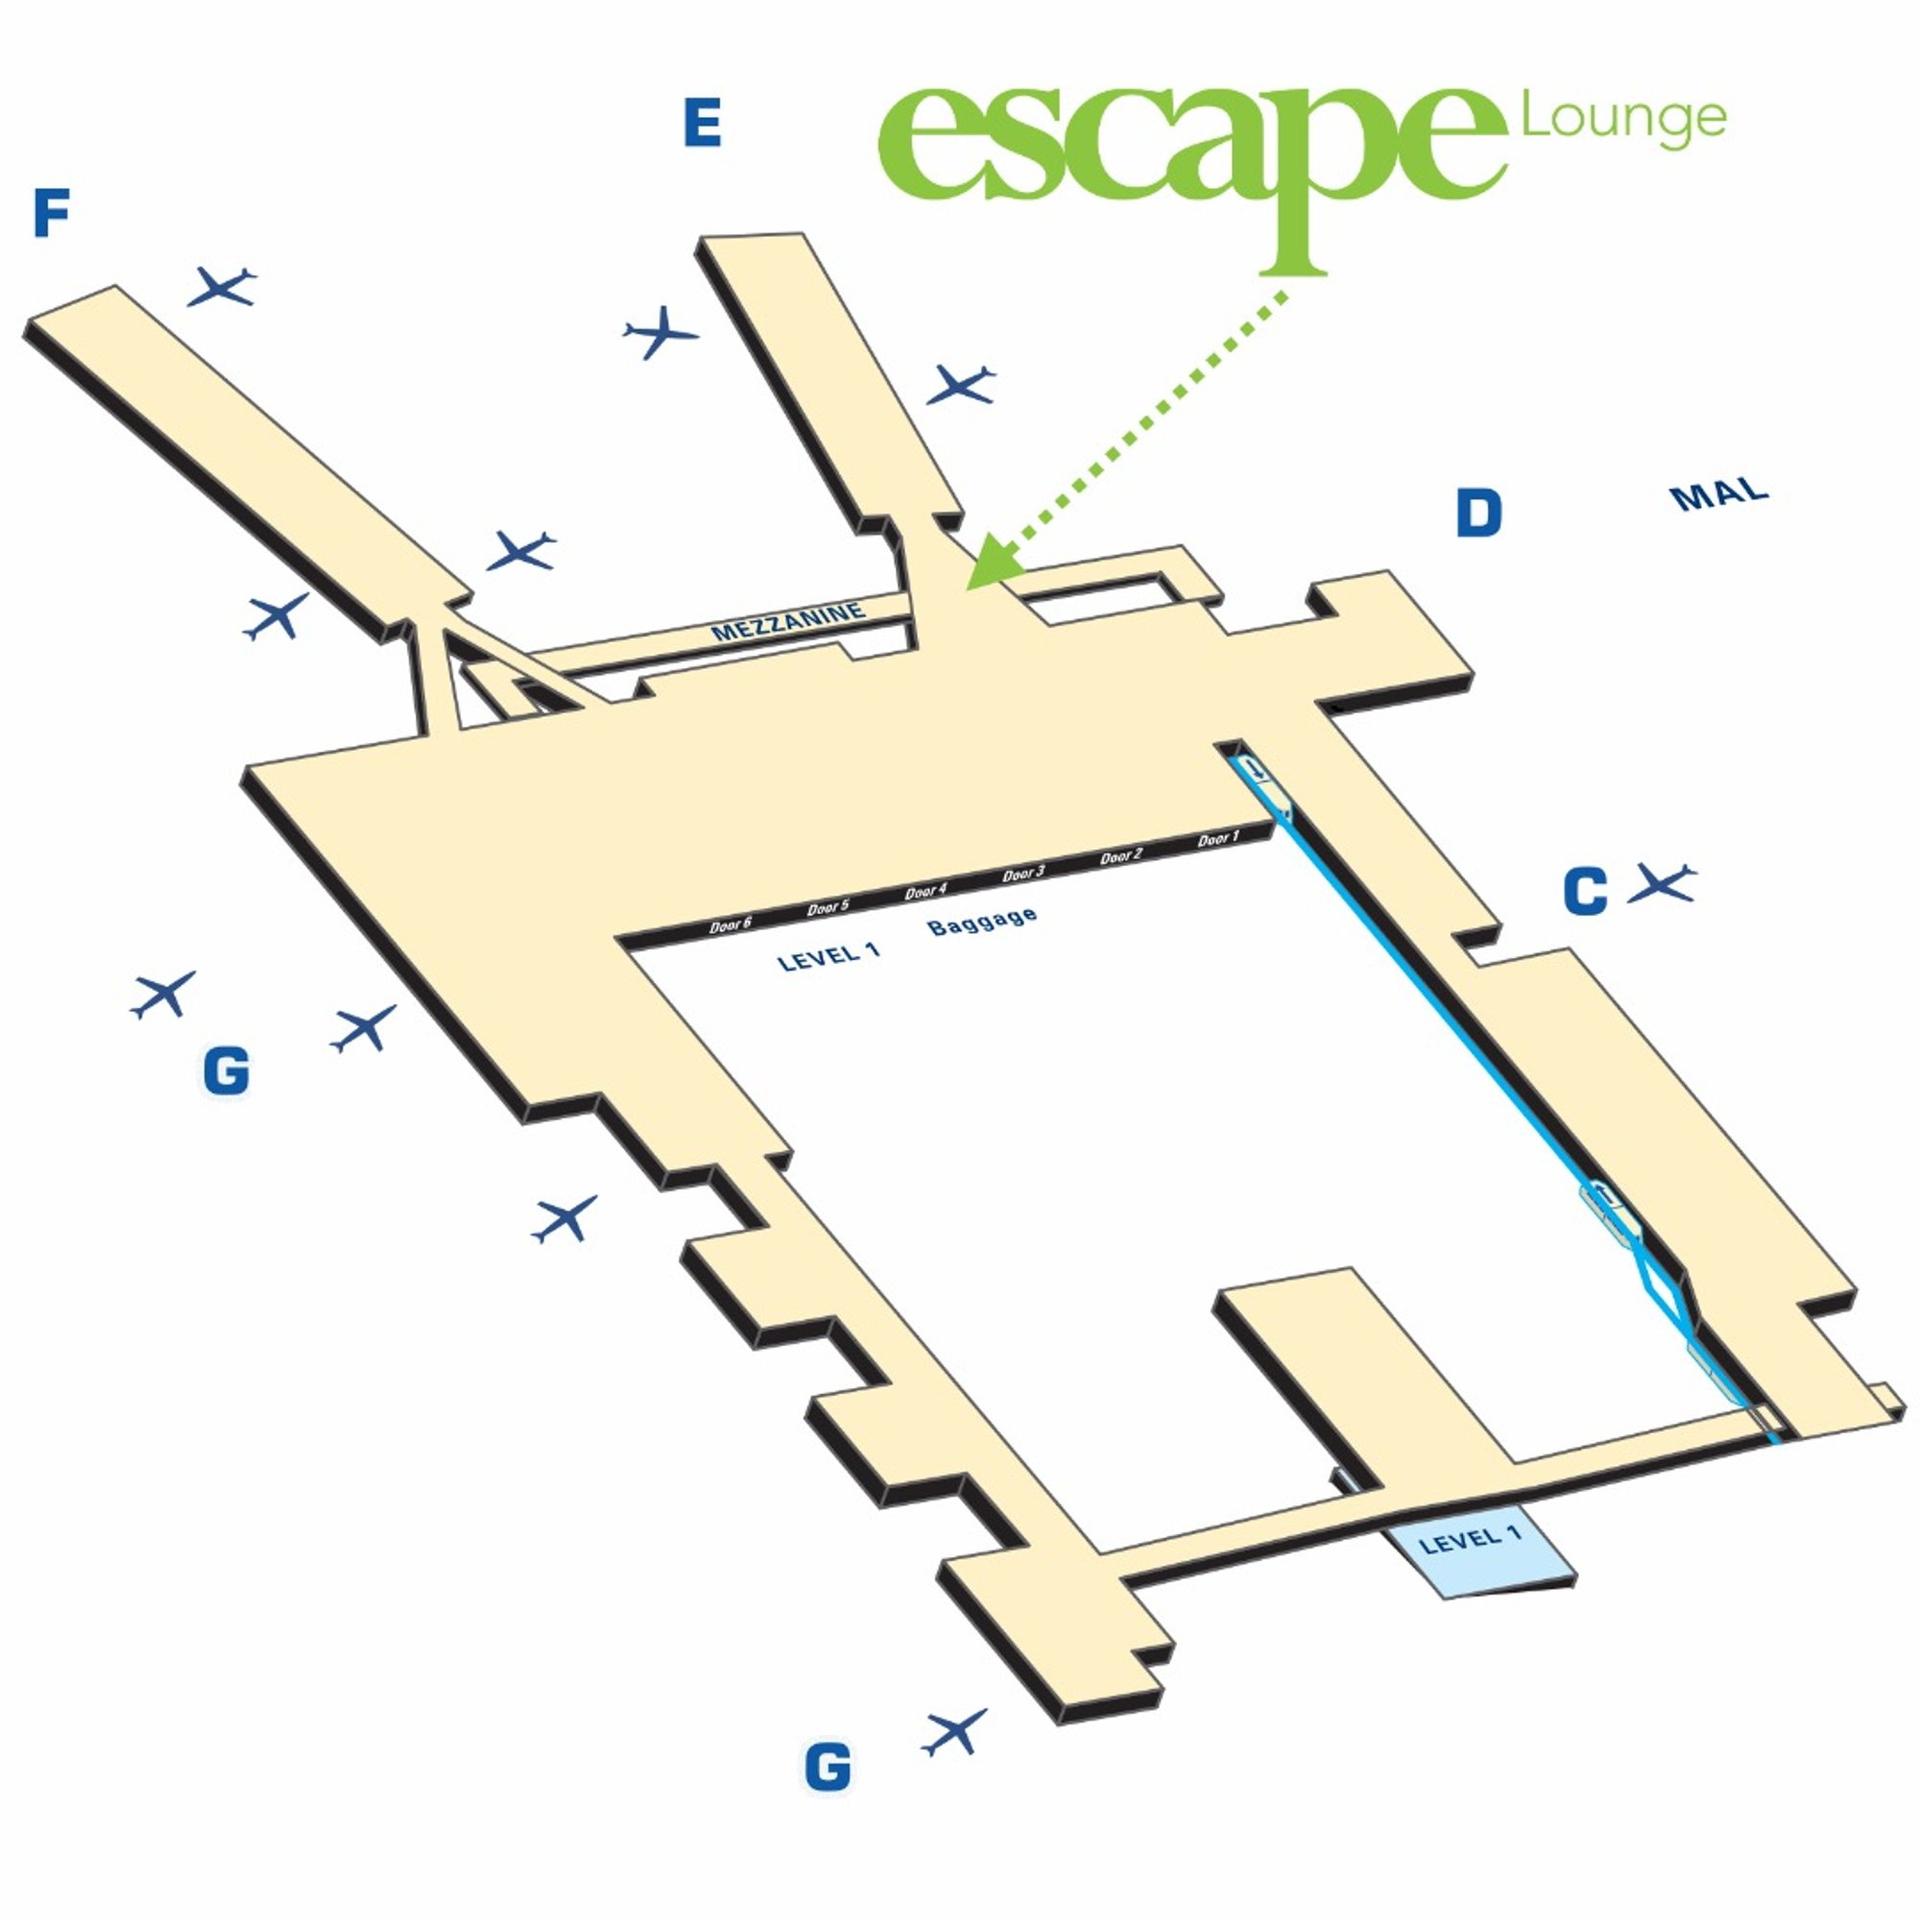 Escape Lounges - The Centurion® Studio Partner image 35 of 67